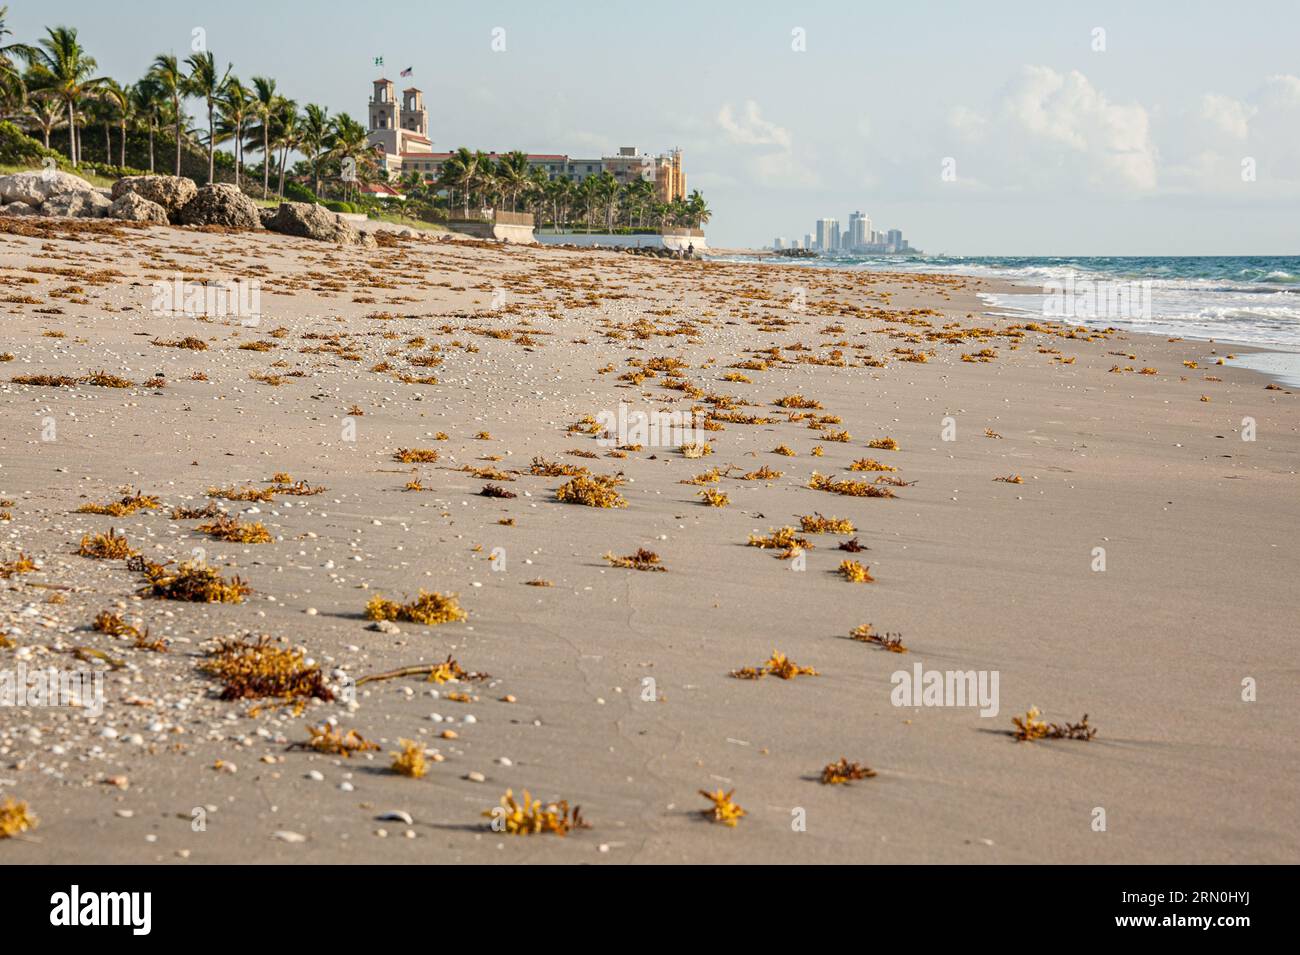 Palm Beach, Florida, vista sulla spiaggia con l'hotel resort Breakers sullo sfondo e Singer Island visibile in lontananza. (USA) Foto Stock